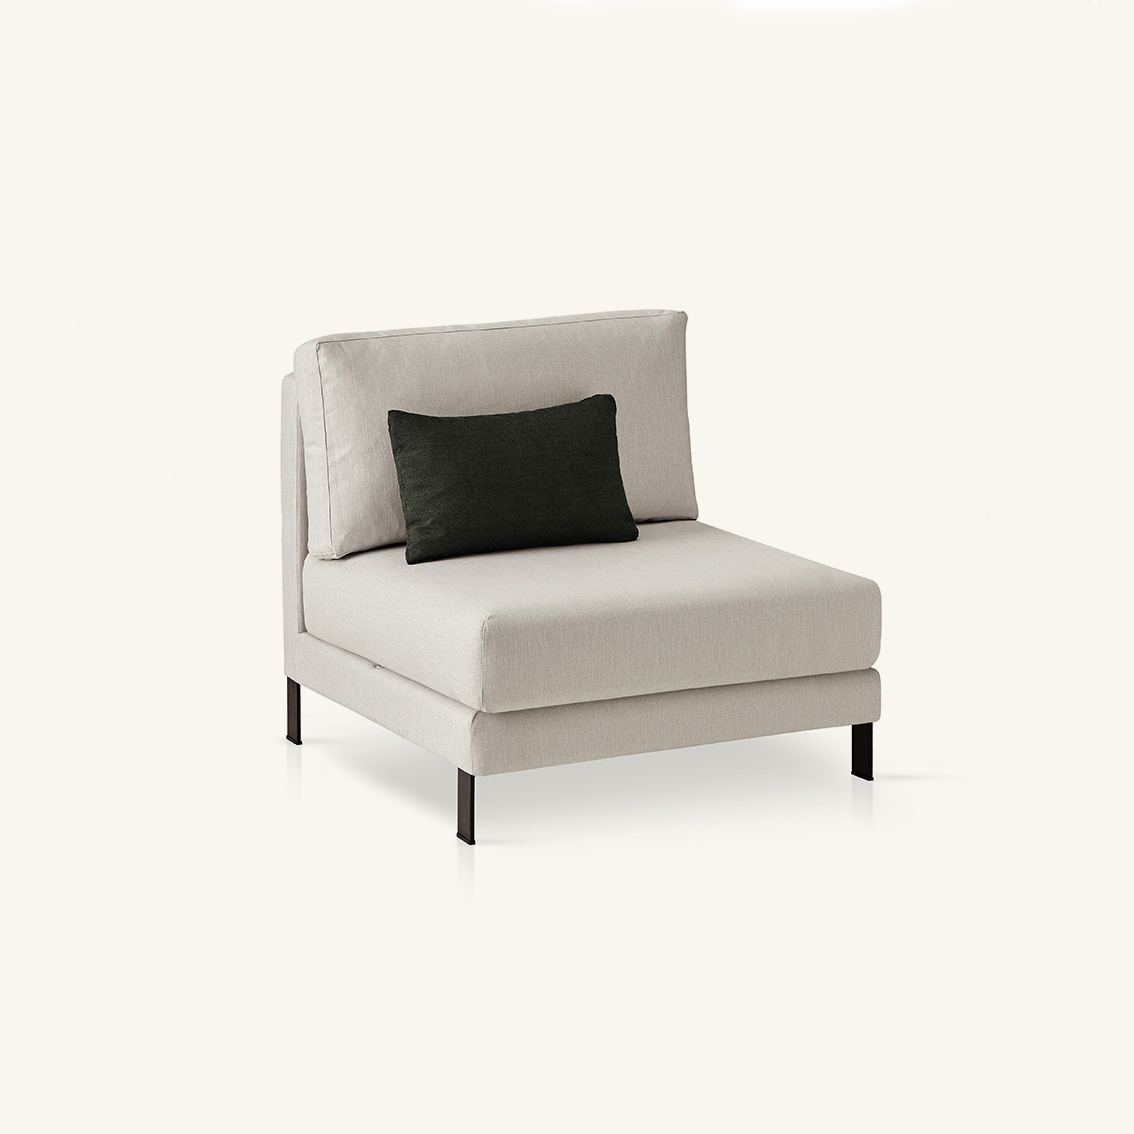 muebles de exterior - sofás - módulo central slim